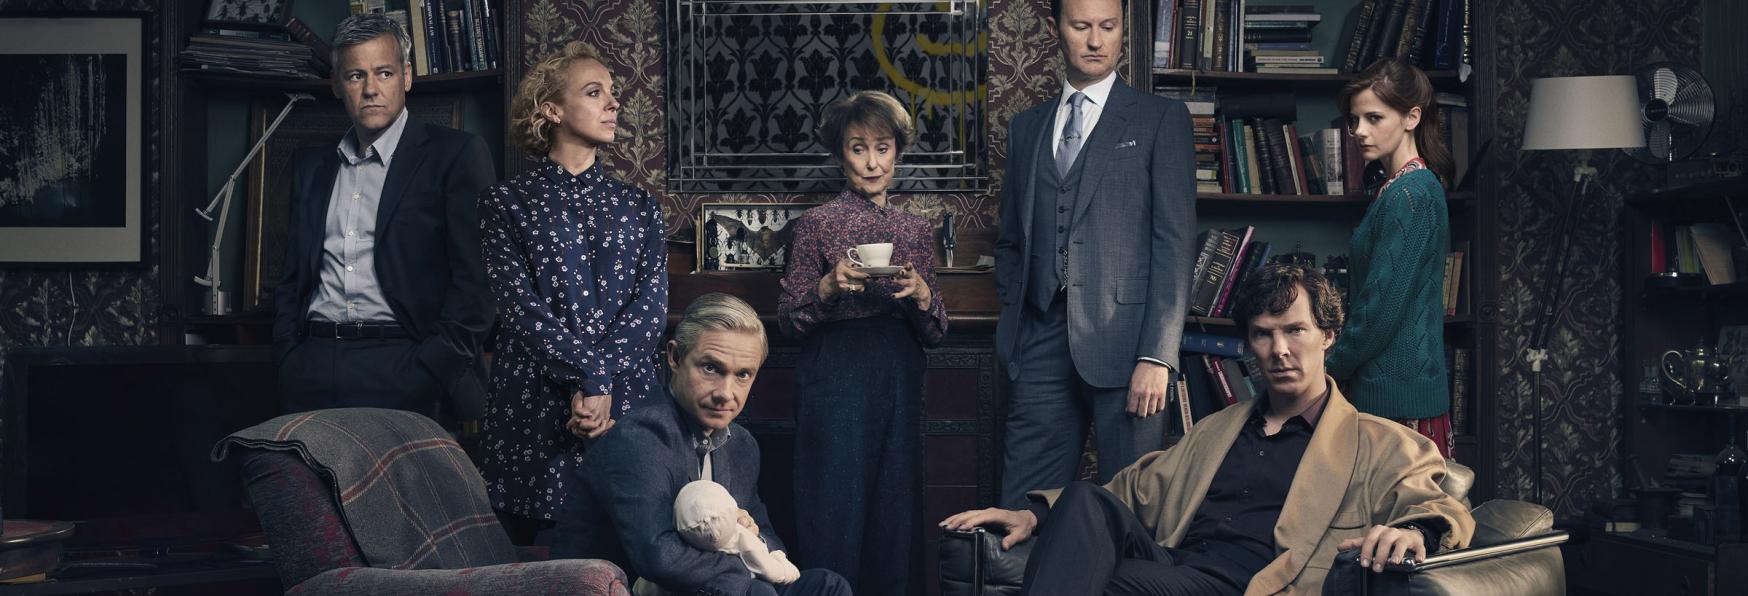 Sherlock: la Recensione della famosa Serie TV Britannica creata da Steven Moffat e Mark Gatiss